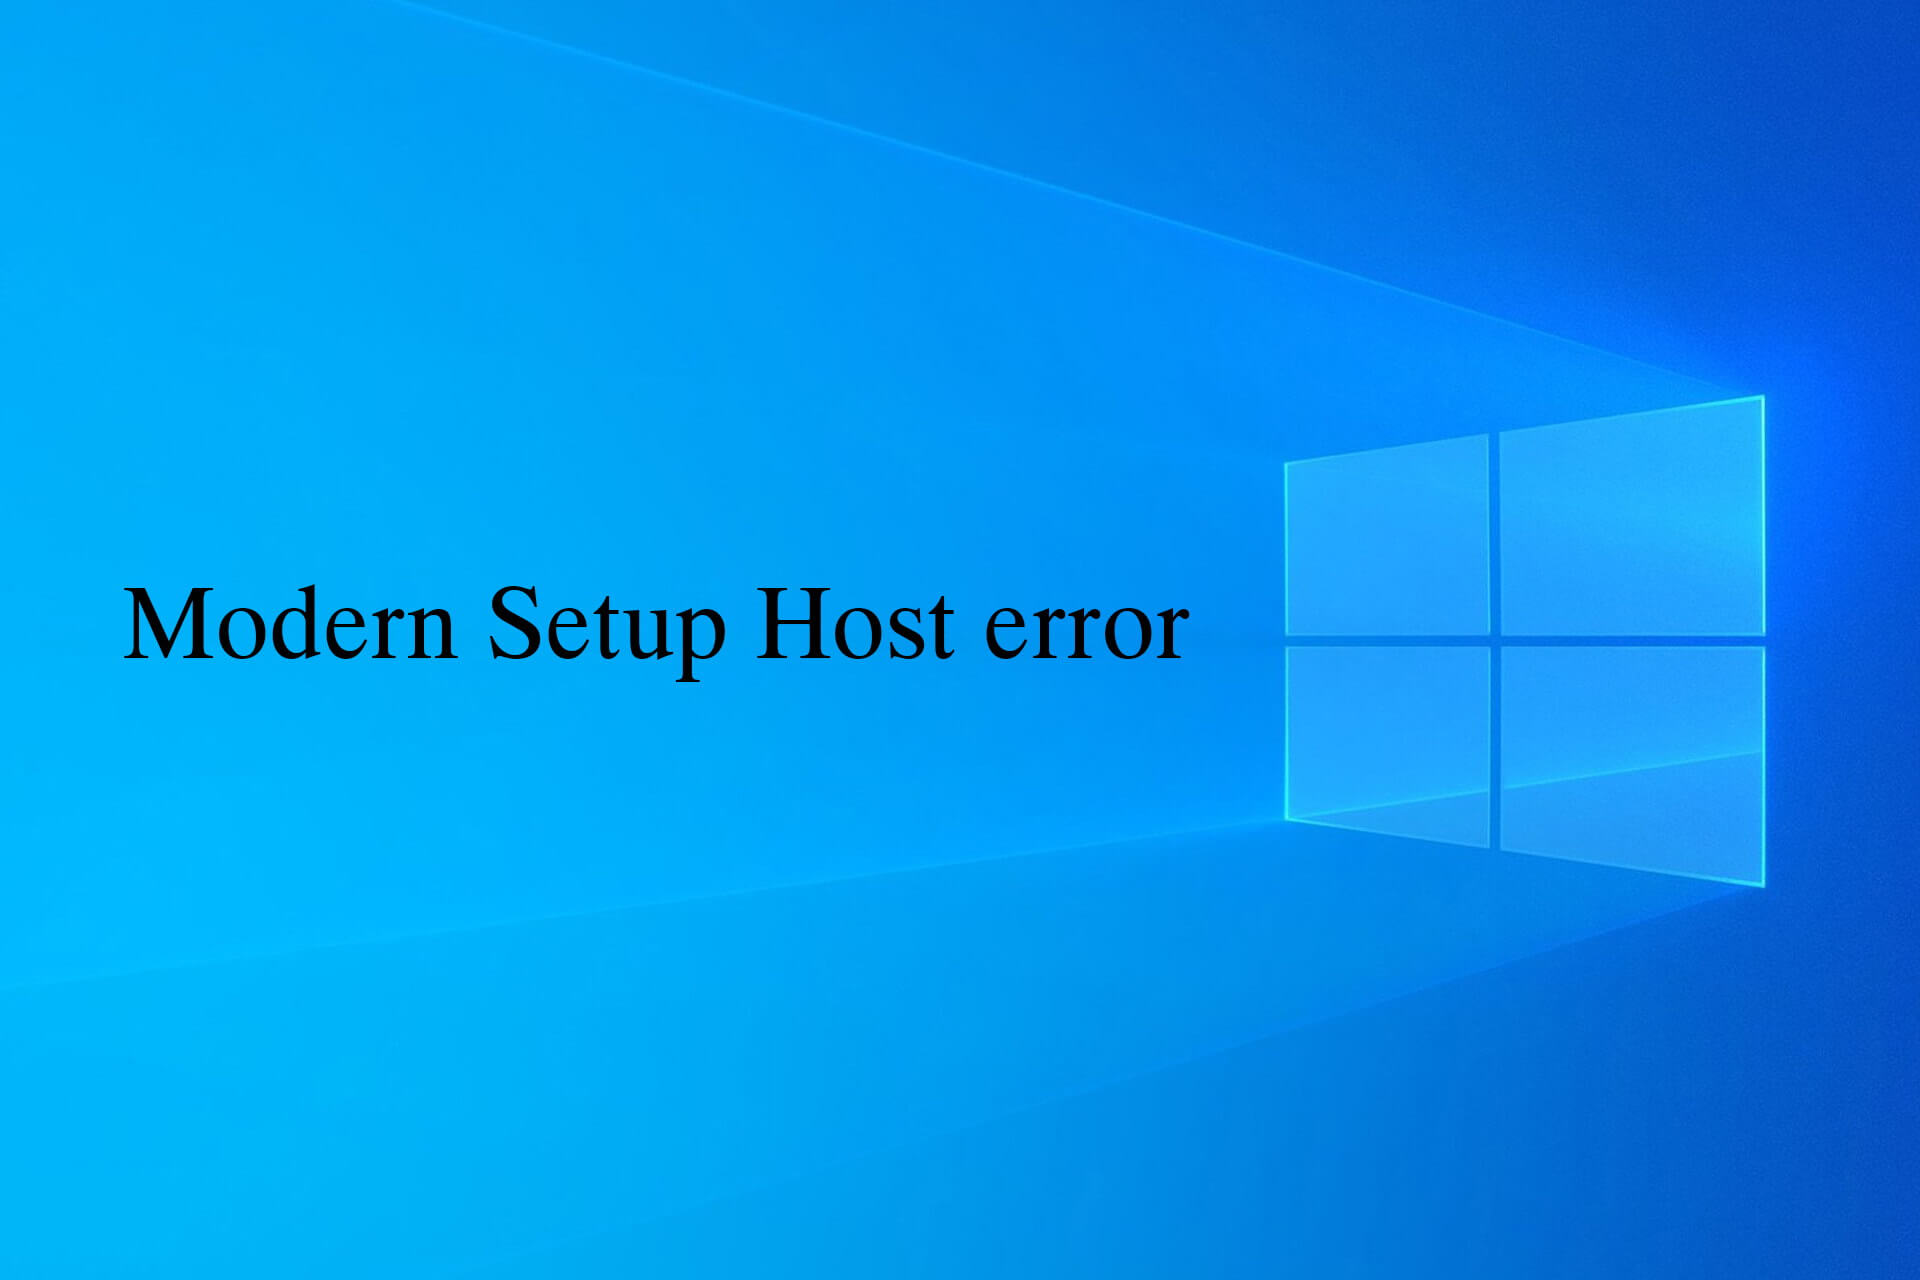 Modern Setup Host error fixes